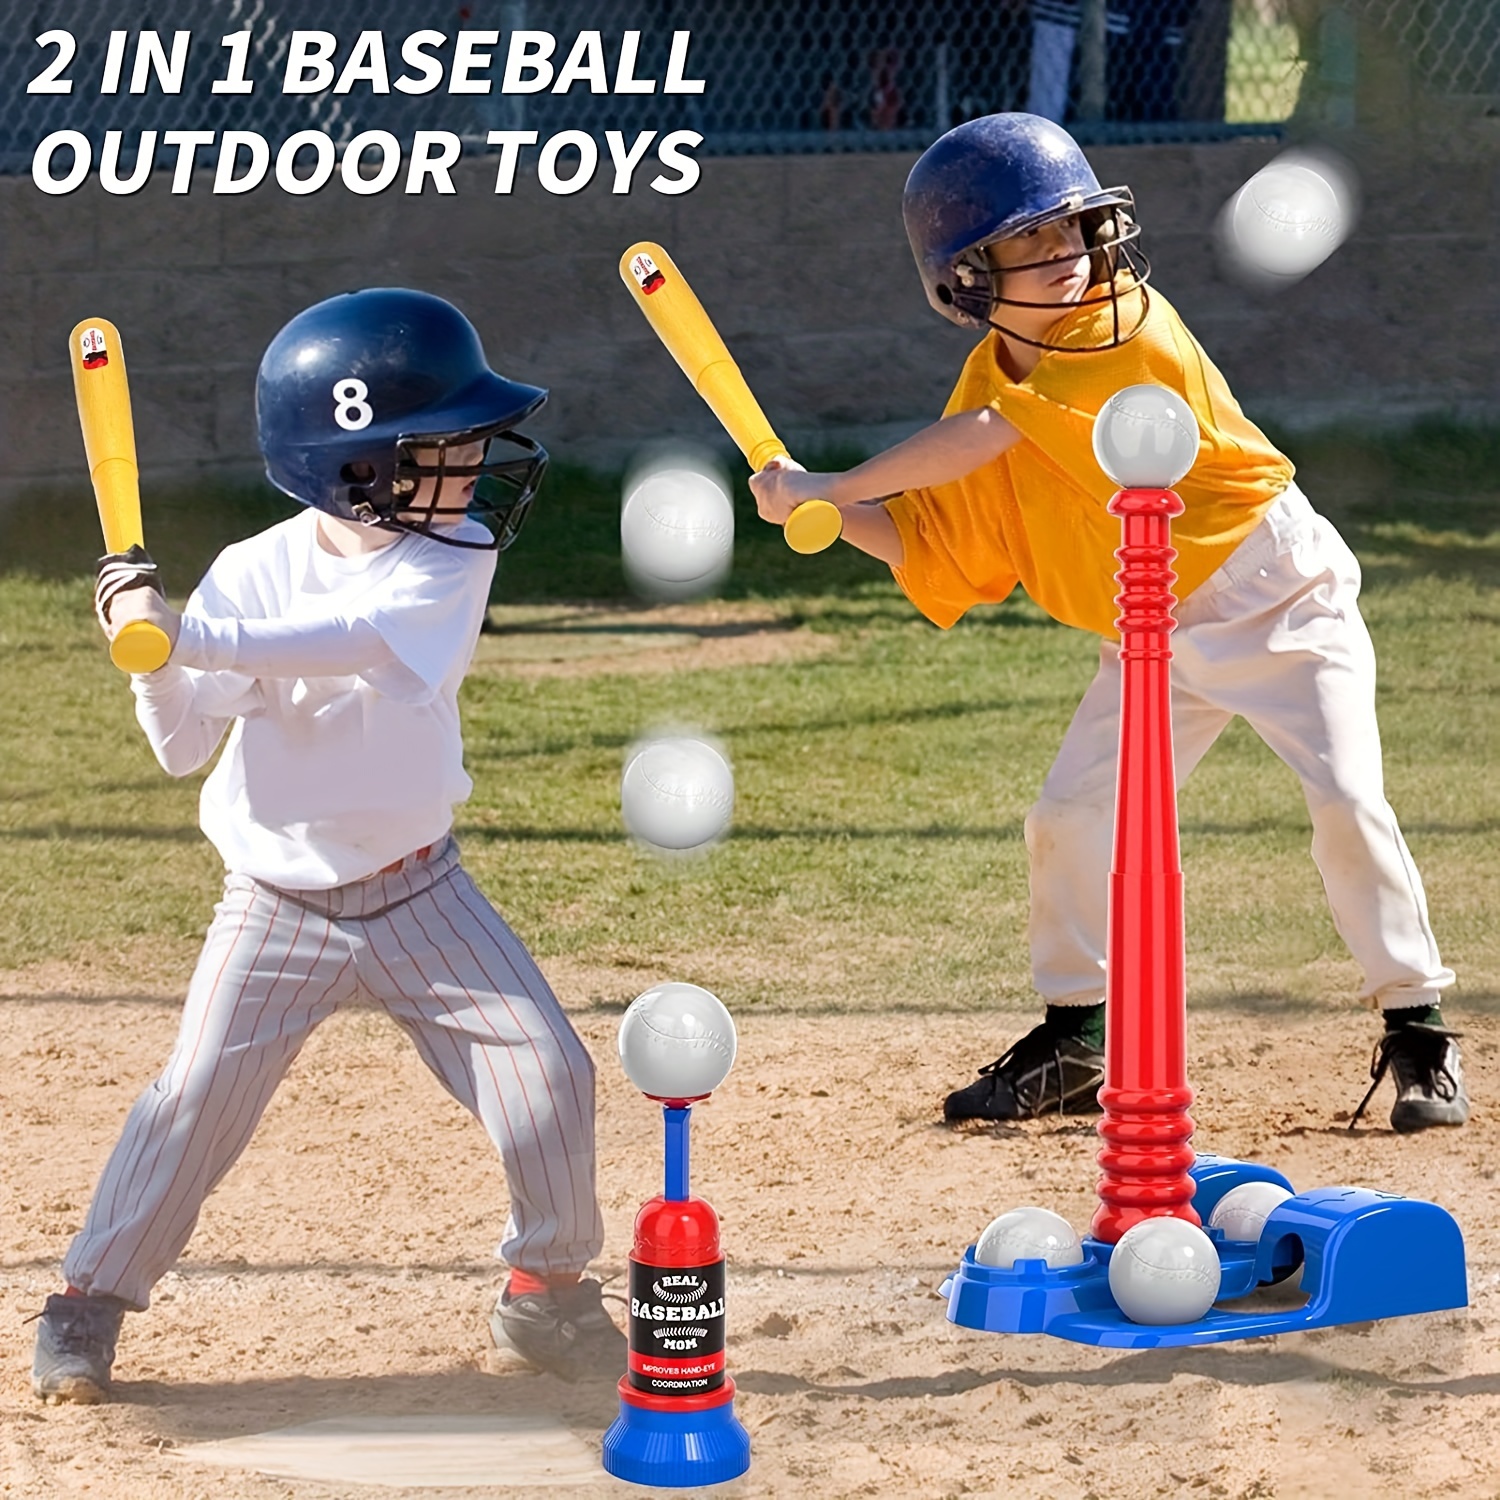 Bate Bat De Beisbol Baseball Para Niños Adolescentes Tee Ball